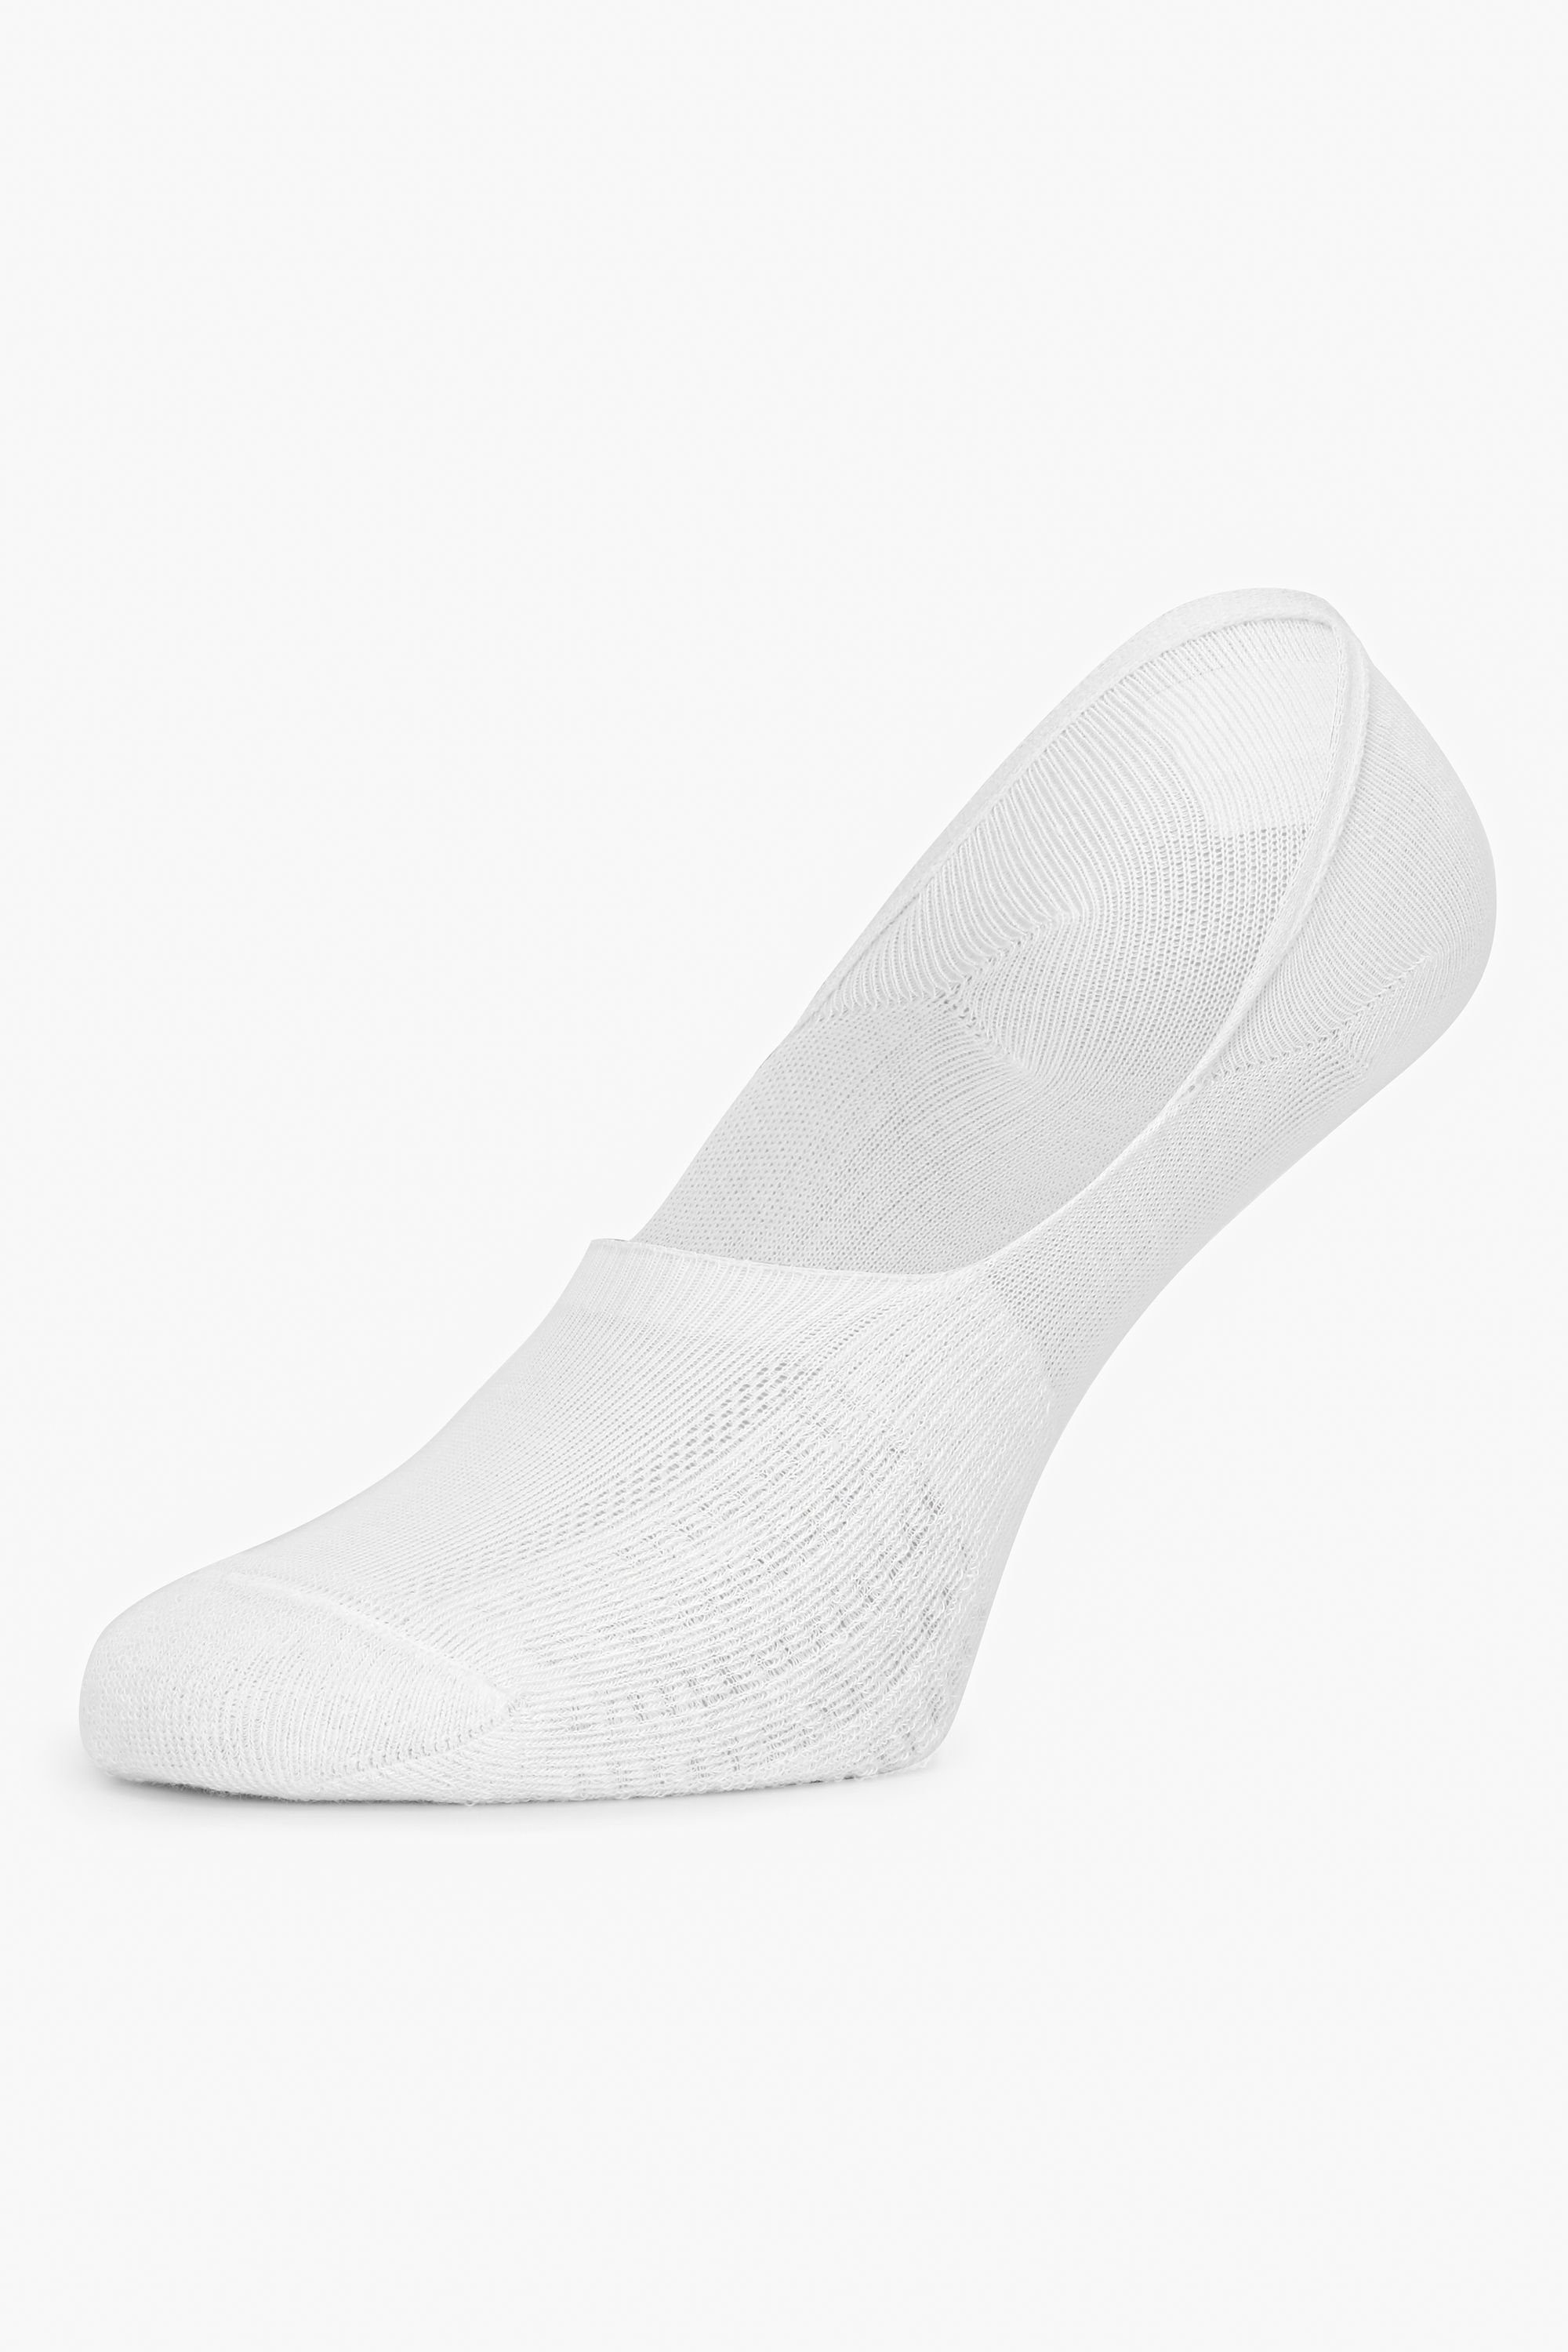 MSGI036 Weiß Damen aus Style mit Socken Baumwolle Frotteeinsätzen Merry Sneaker Socken